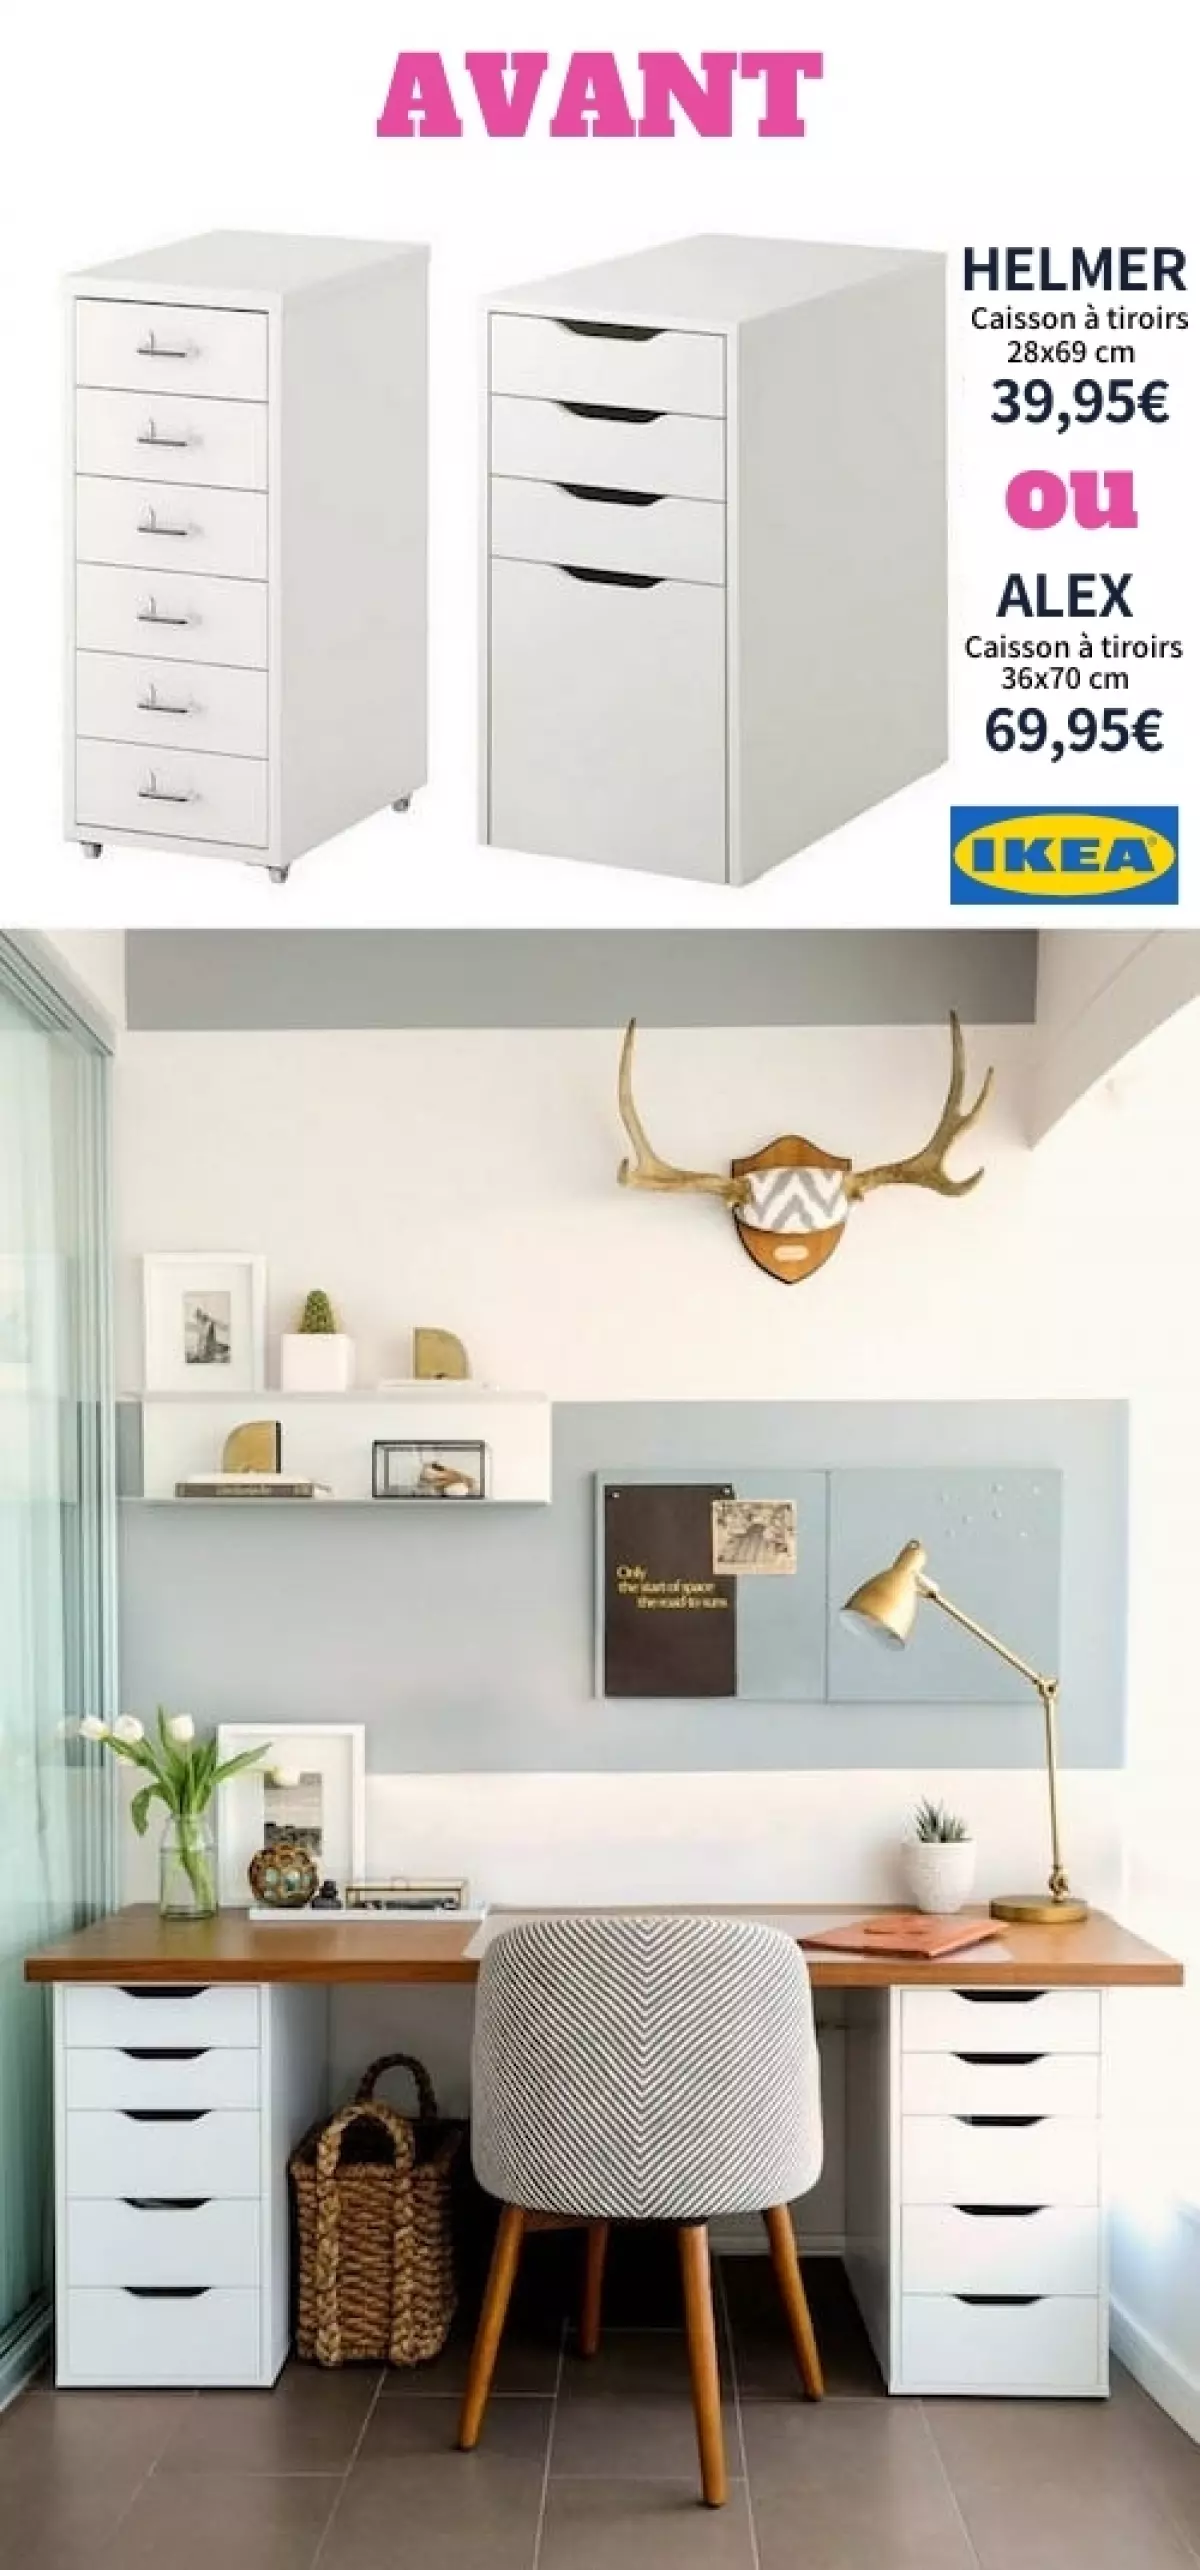 Faites un bureau IKEA avec des caissons de tiroir HELMER ou ALEX.